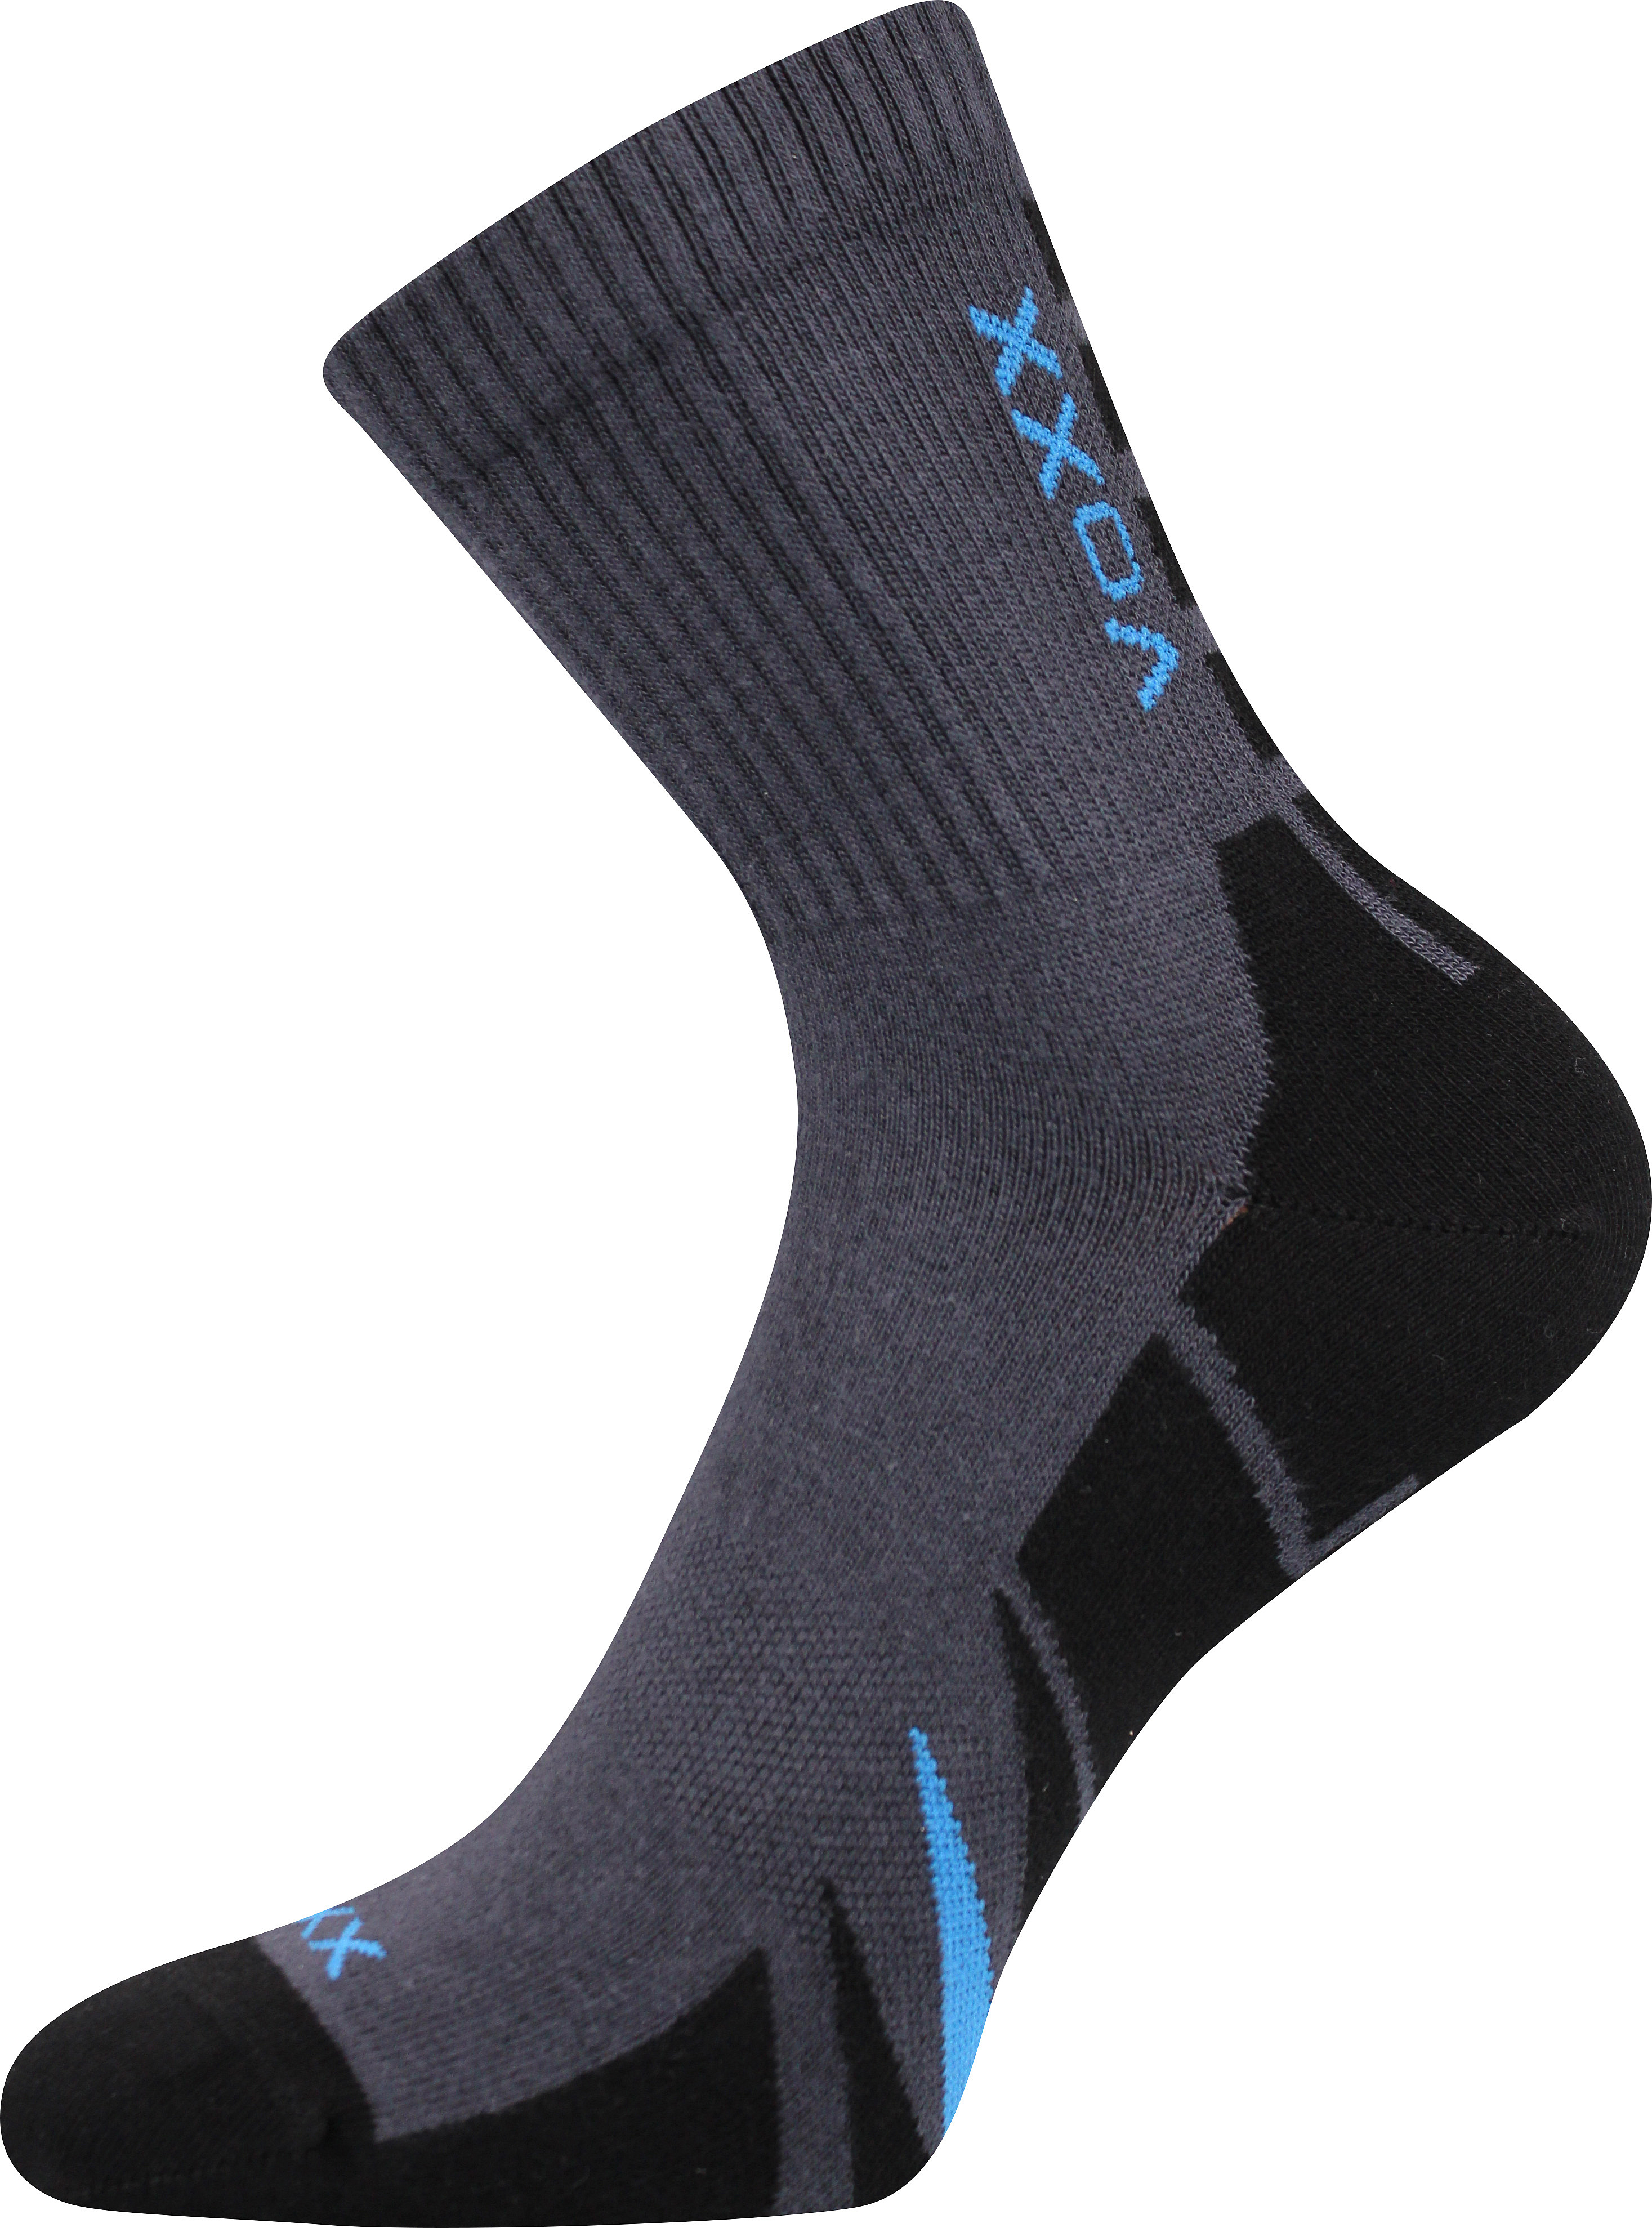 Ponožky sportovní Voxx Hermes - tmavě šedé-černé, 43-46